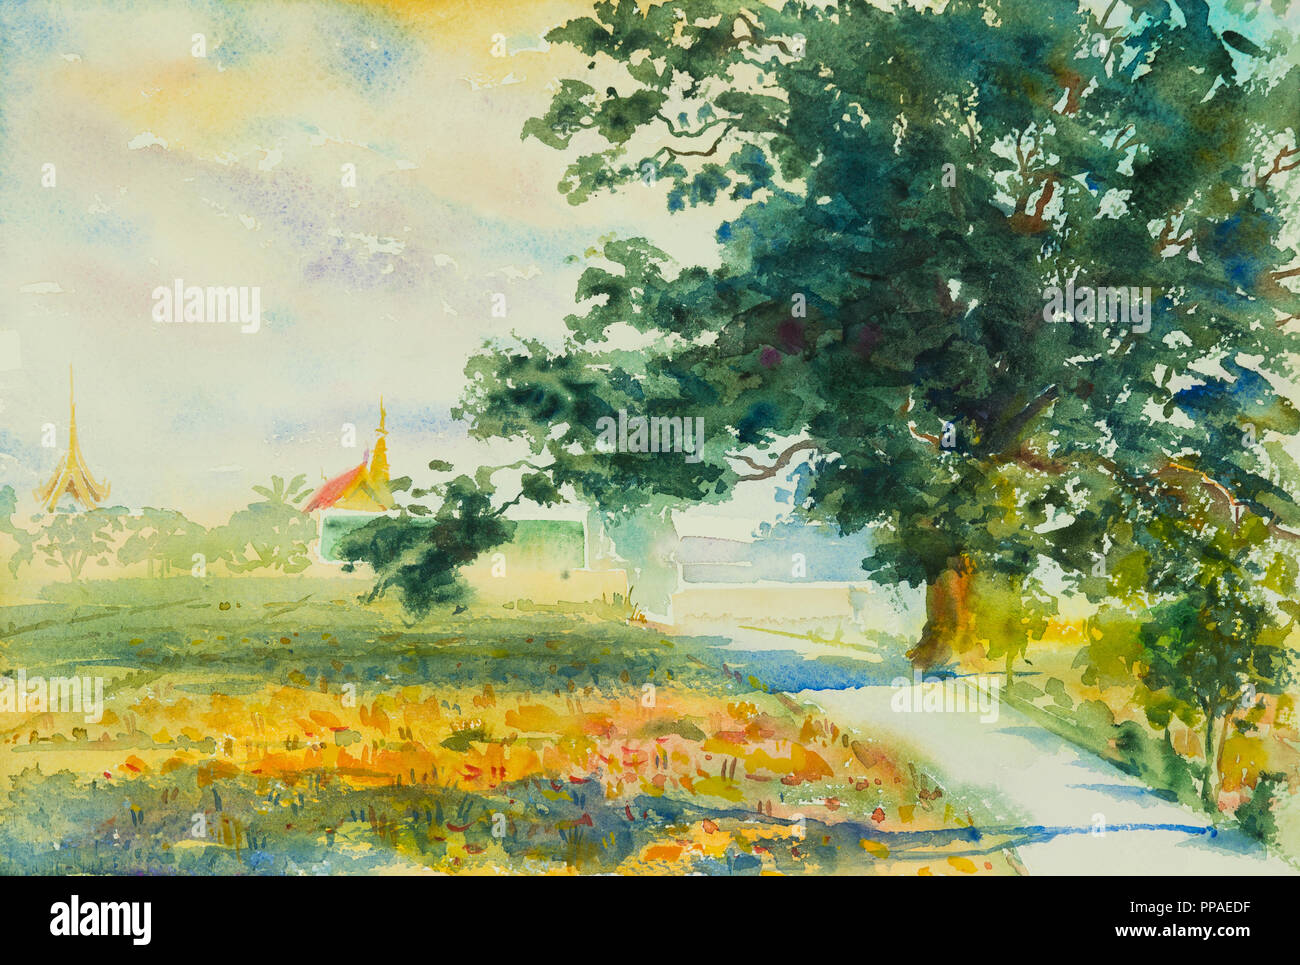 Peinture Aquarelle paysage coloré original de champ de riz,vue sur le village, rue de la saison de printemps. Peint à la main, bleu ciel nuage background,beaut Banque D'Images